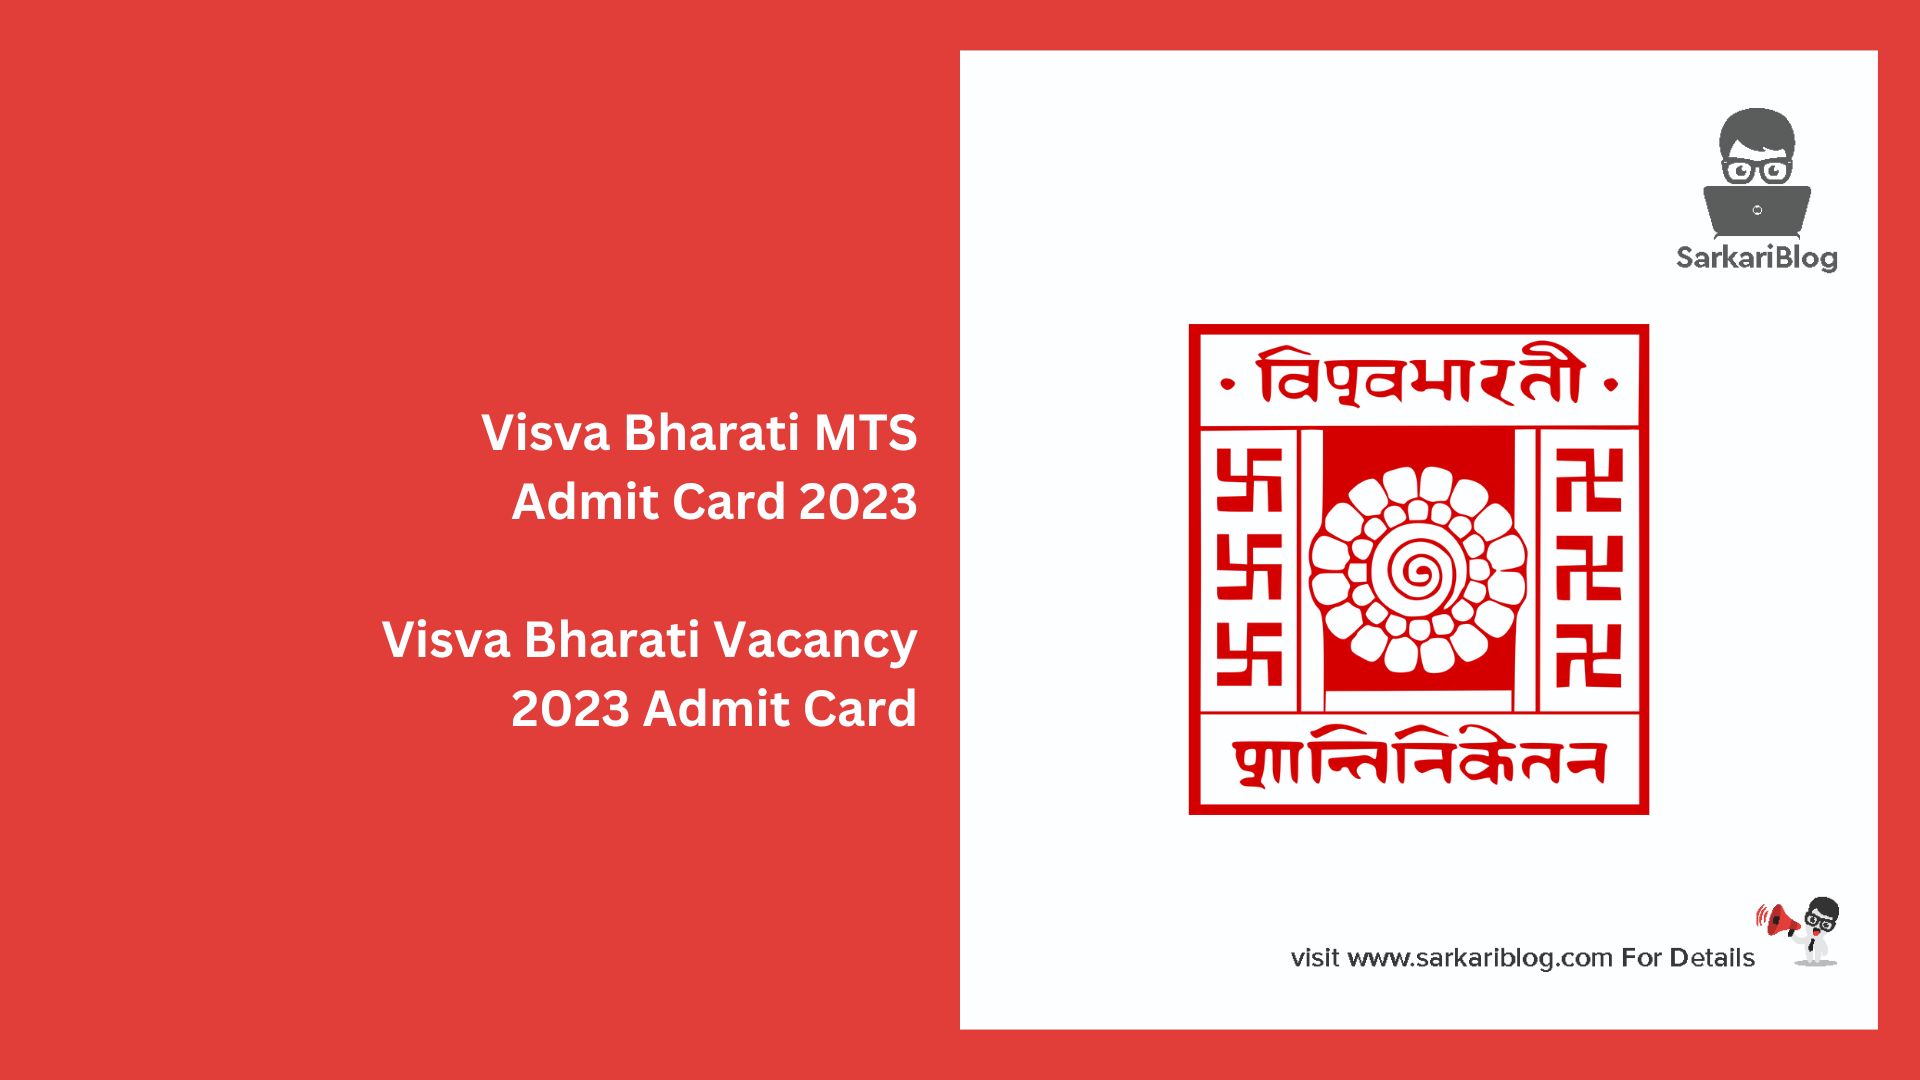 Visva Bharati MTS Admit Card 2023